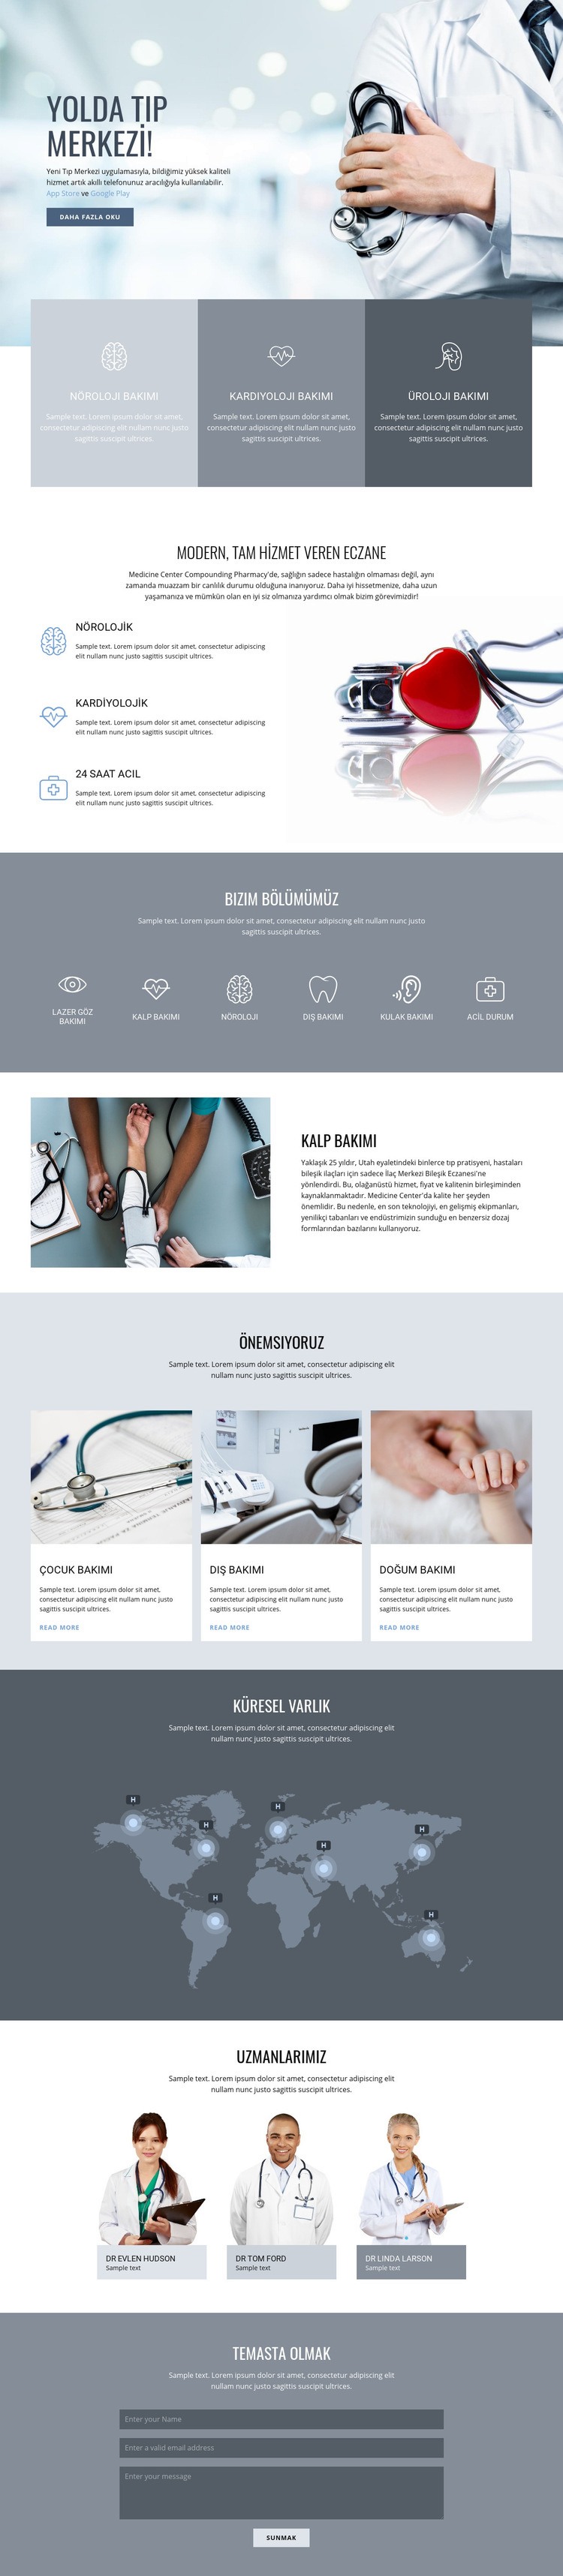 Kaliteli tıp merkezi Açılış sayfası